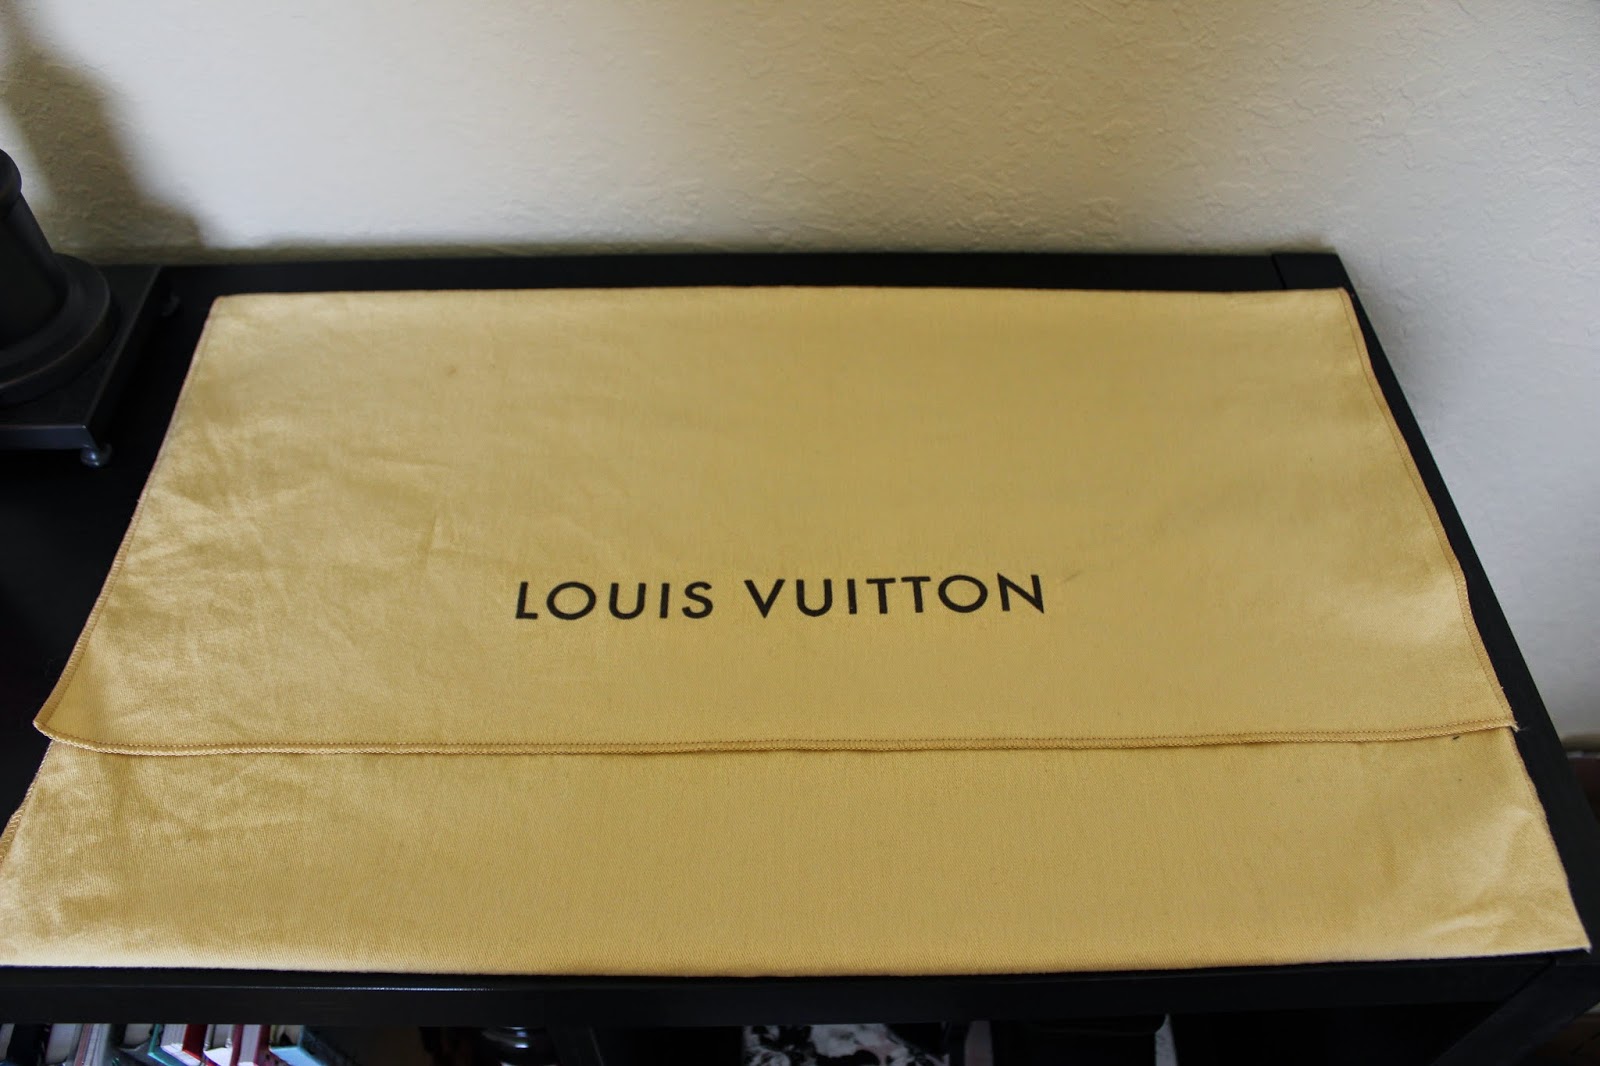 Louis Vuitton Speedy Bandoulière 30 dust bag